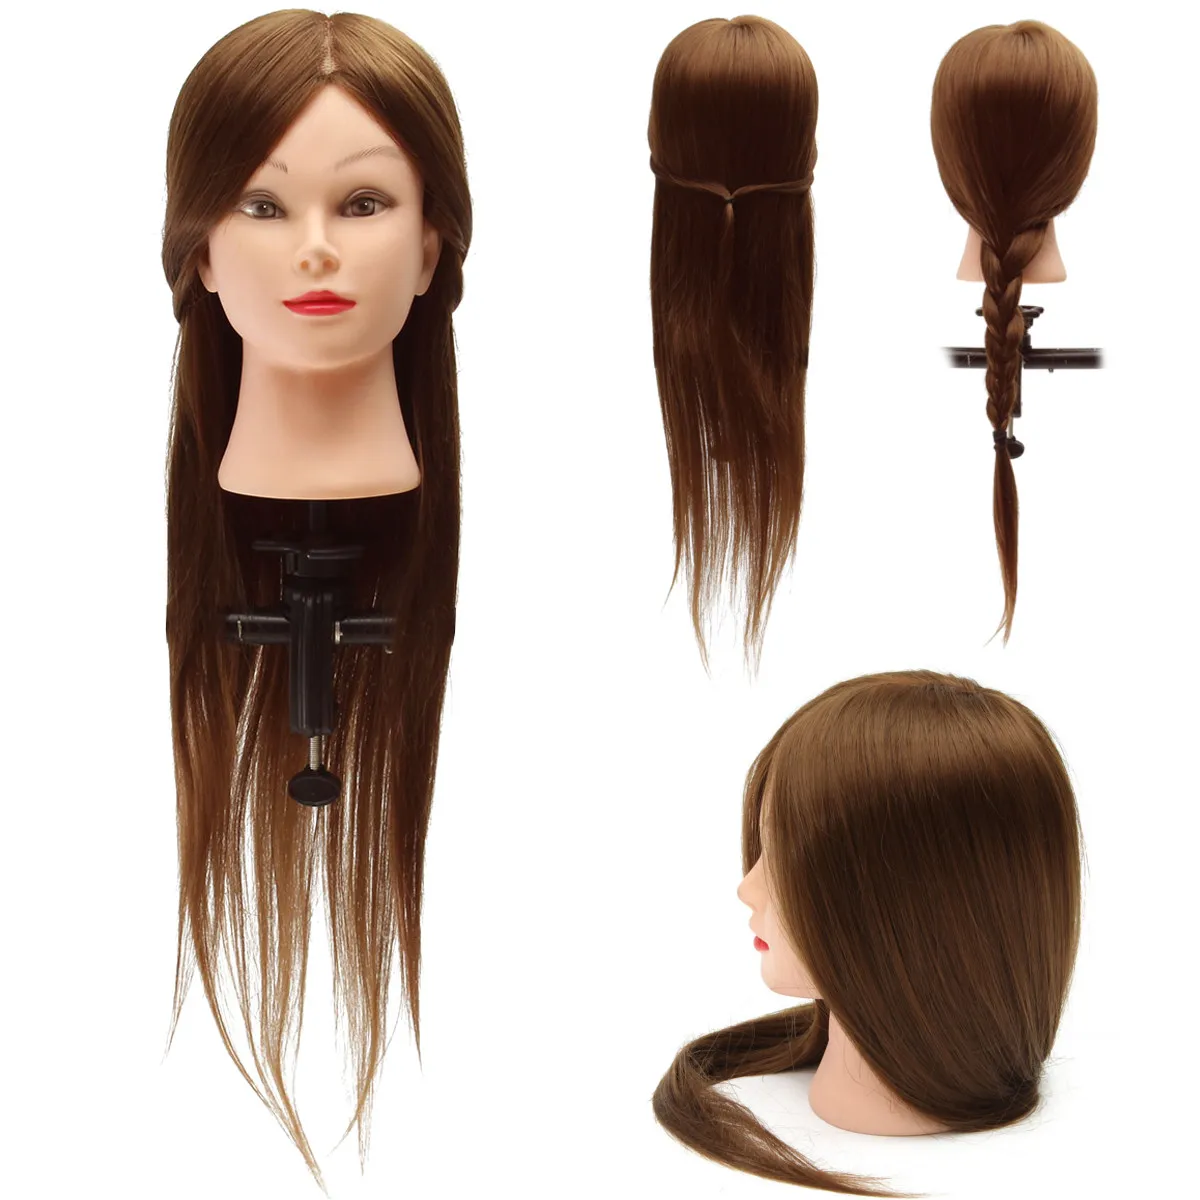 30 дюймов настоящая голова с волосами для тренировки парикмахерский манекен с зажимом держатель женский манекен леди